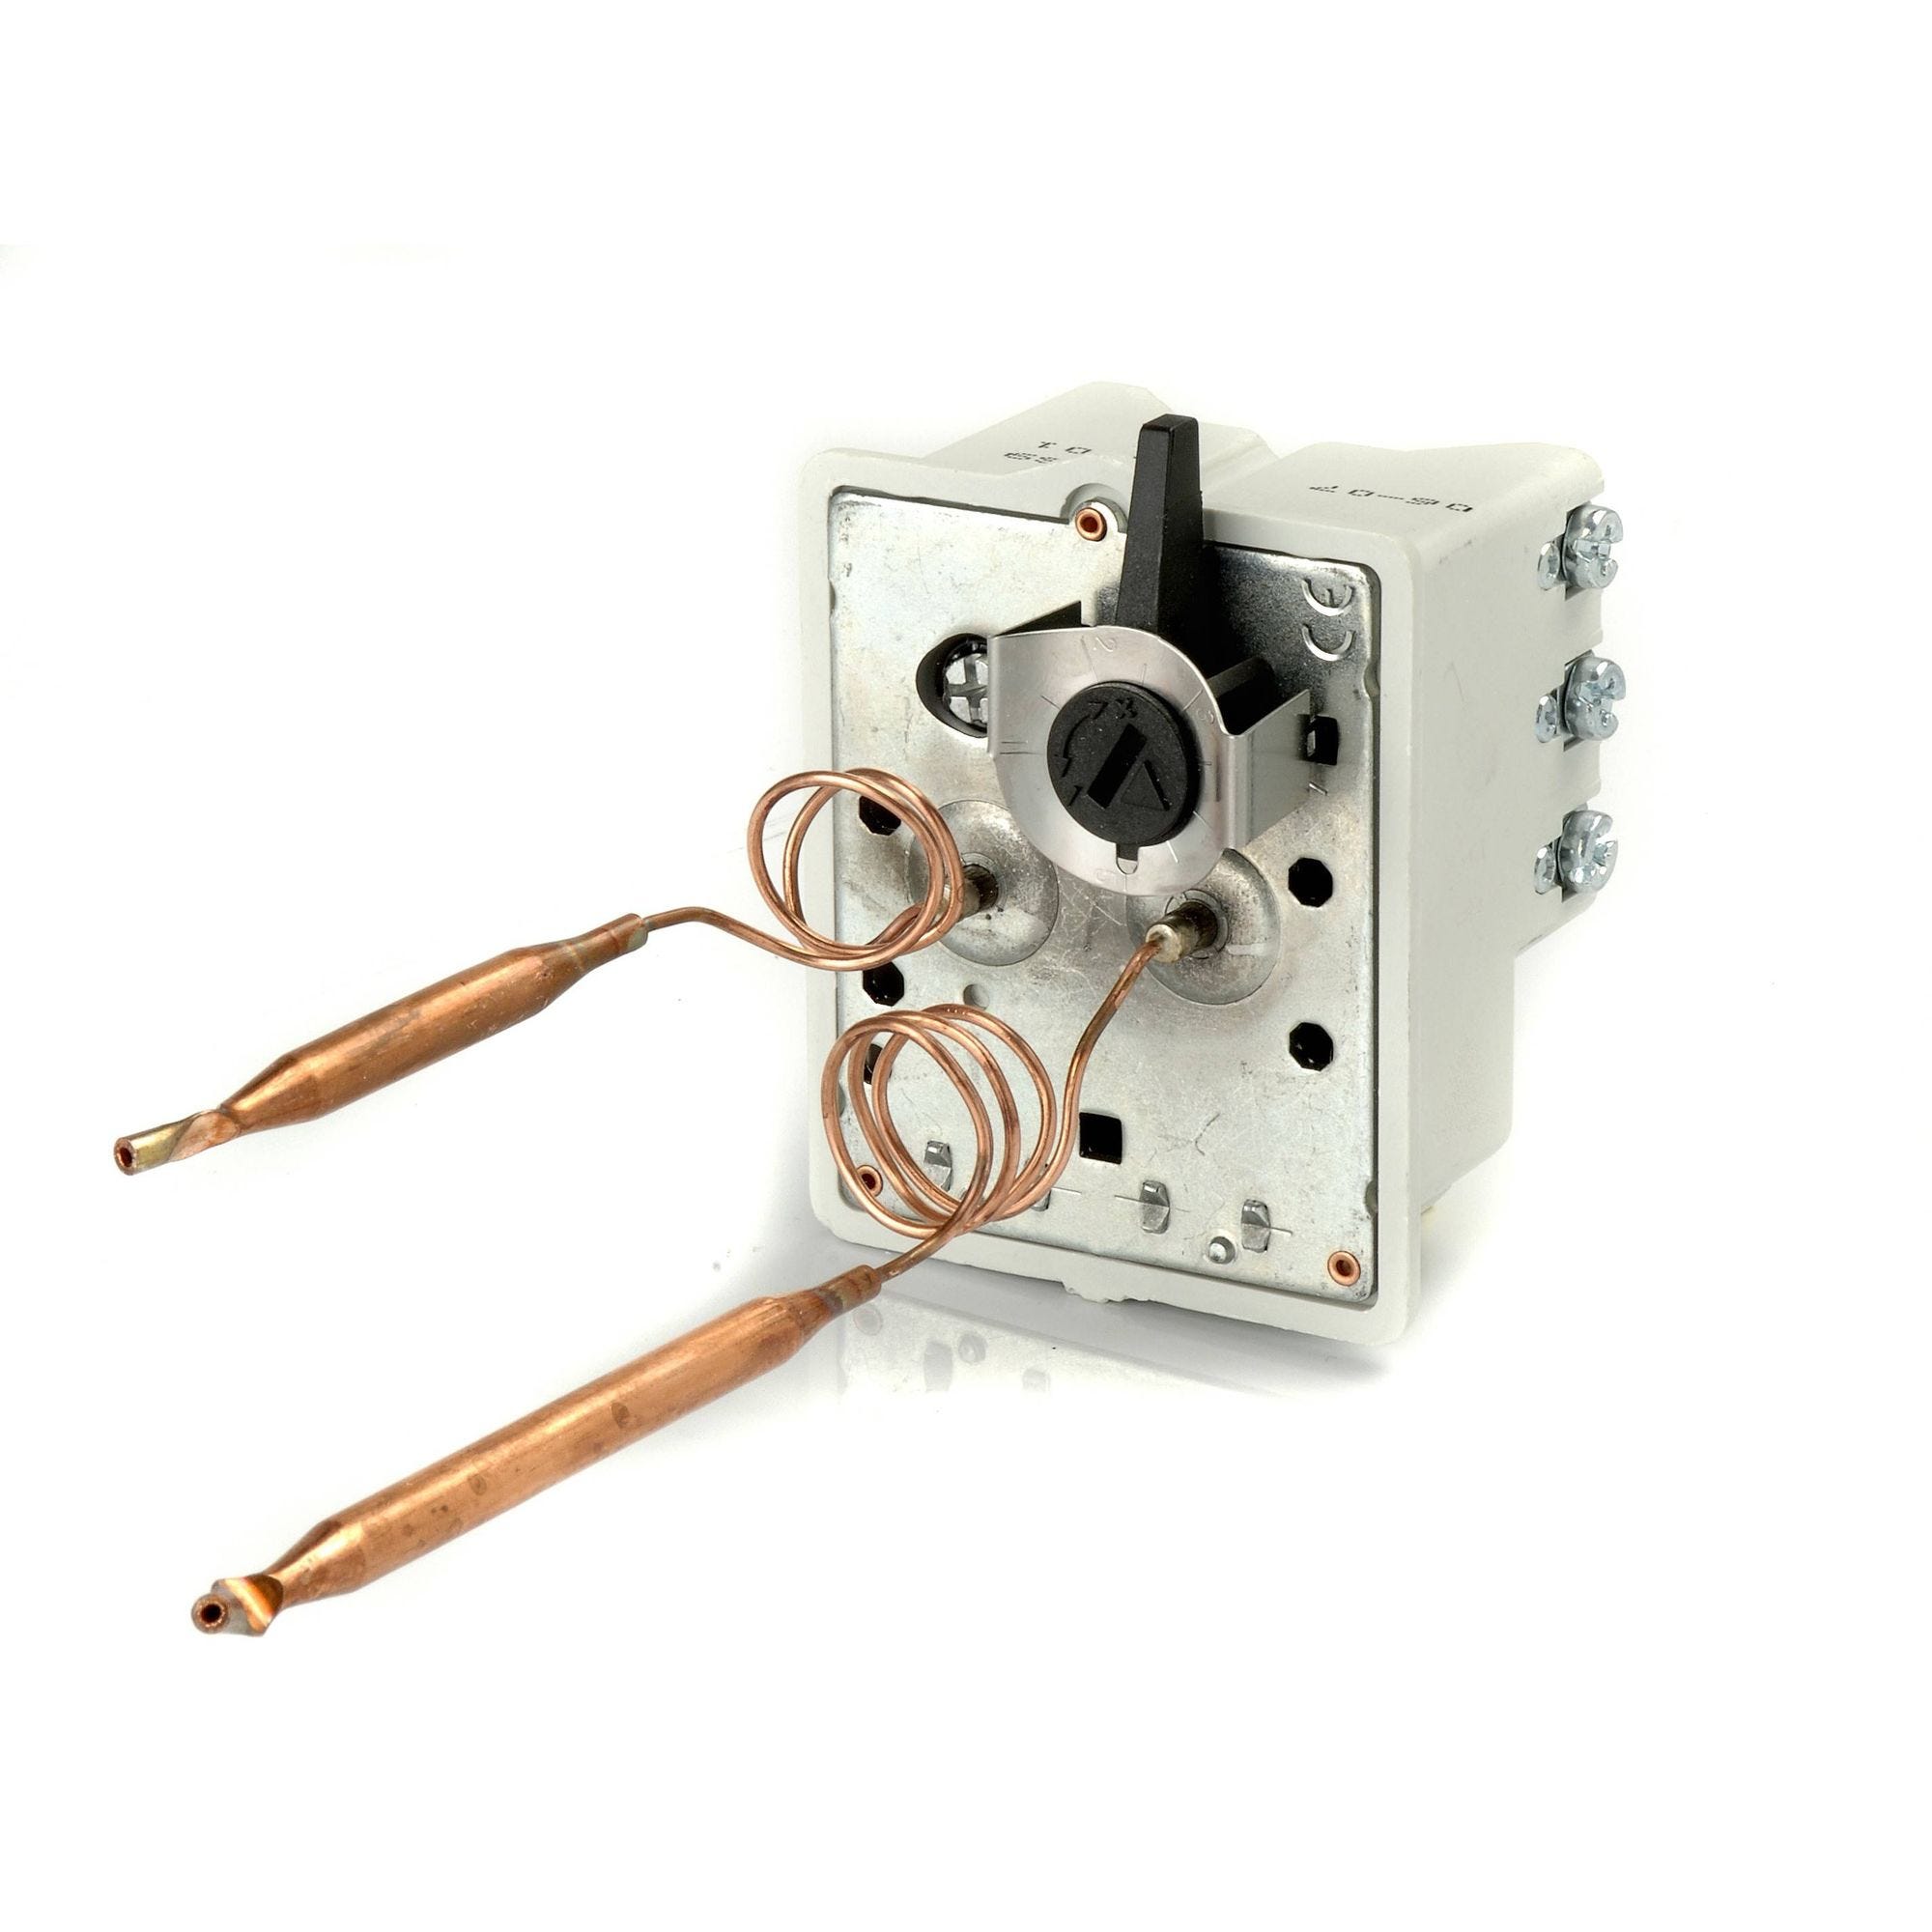 Thermostat chauffe-eau BTS bi-bulbes triphasé L450 + kit de fixation - COTHERM - KBTS900301 0